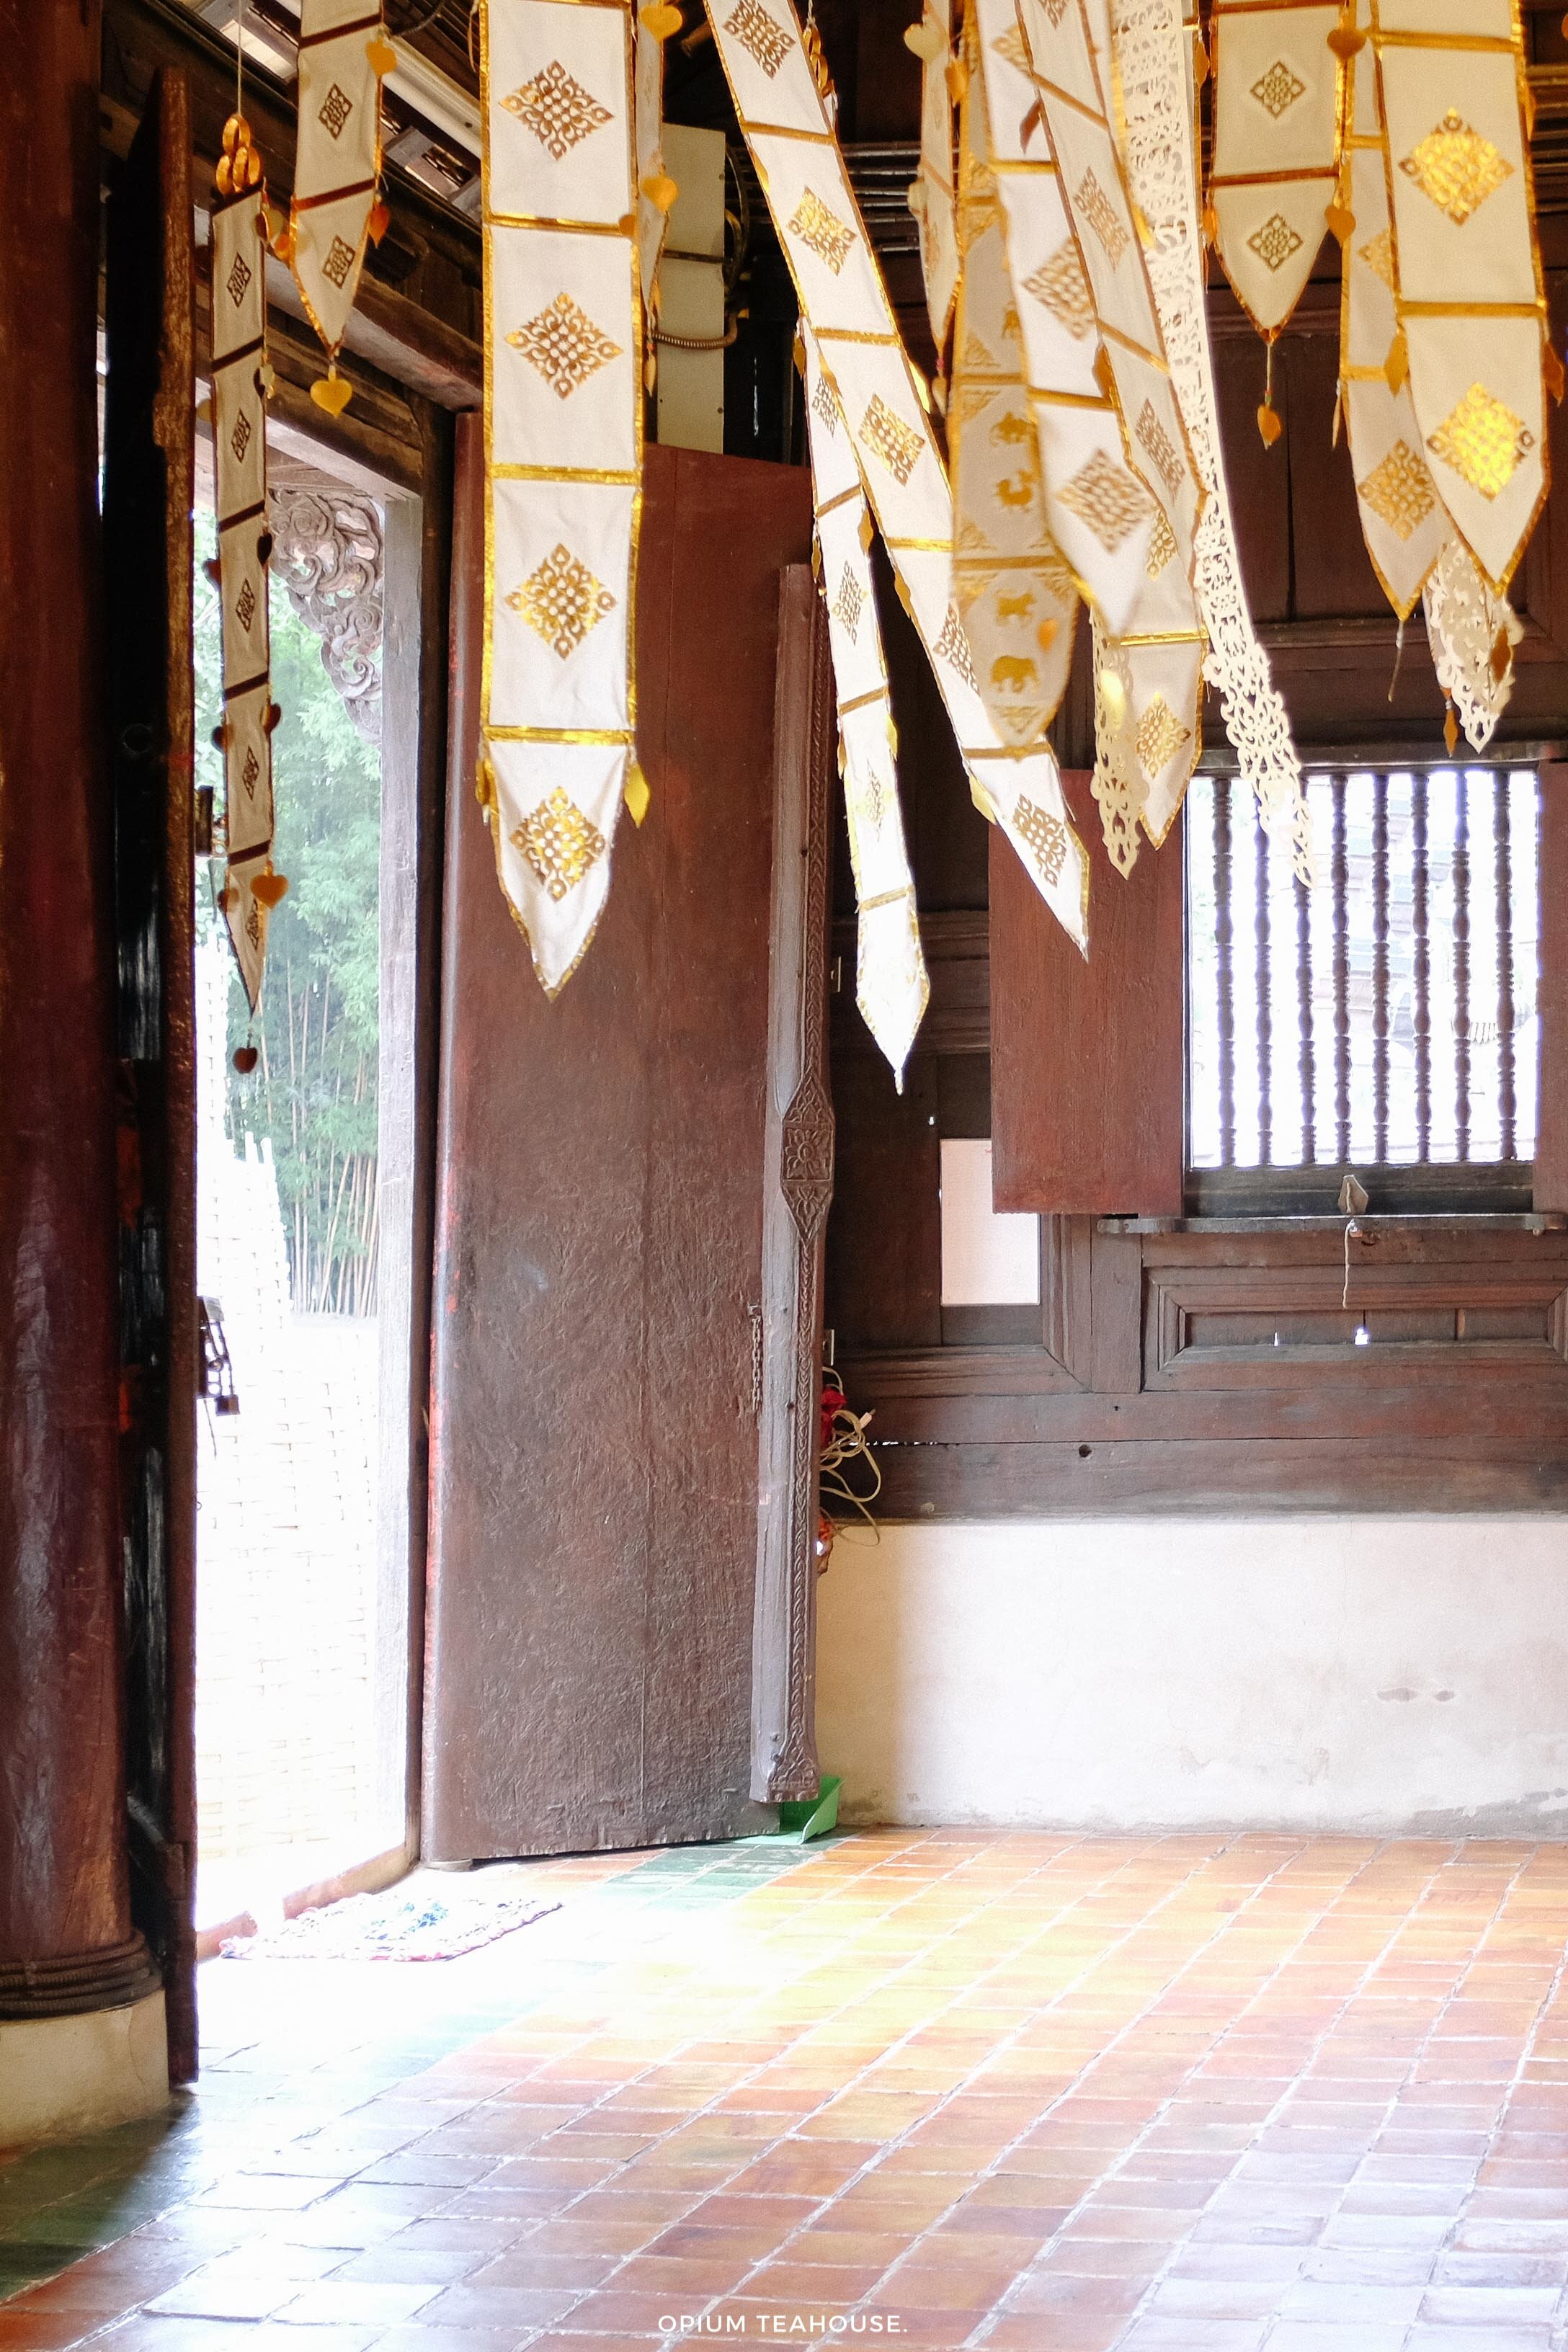 OTH_ Thailand – Chiang Mai Temple interior.jpg